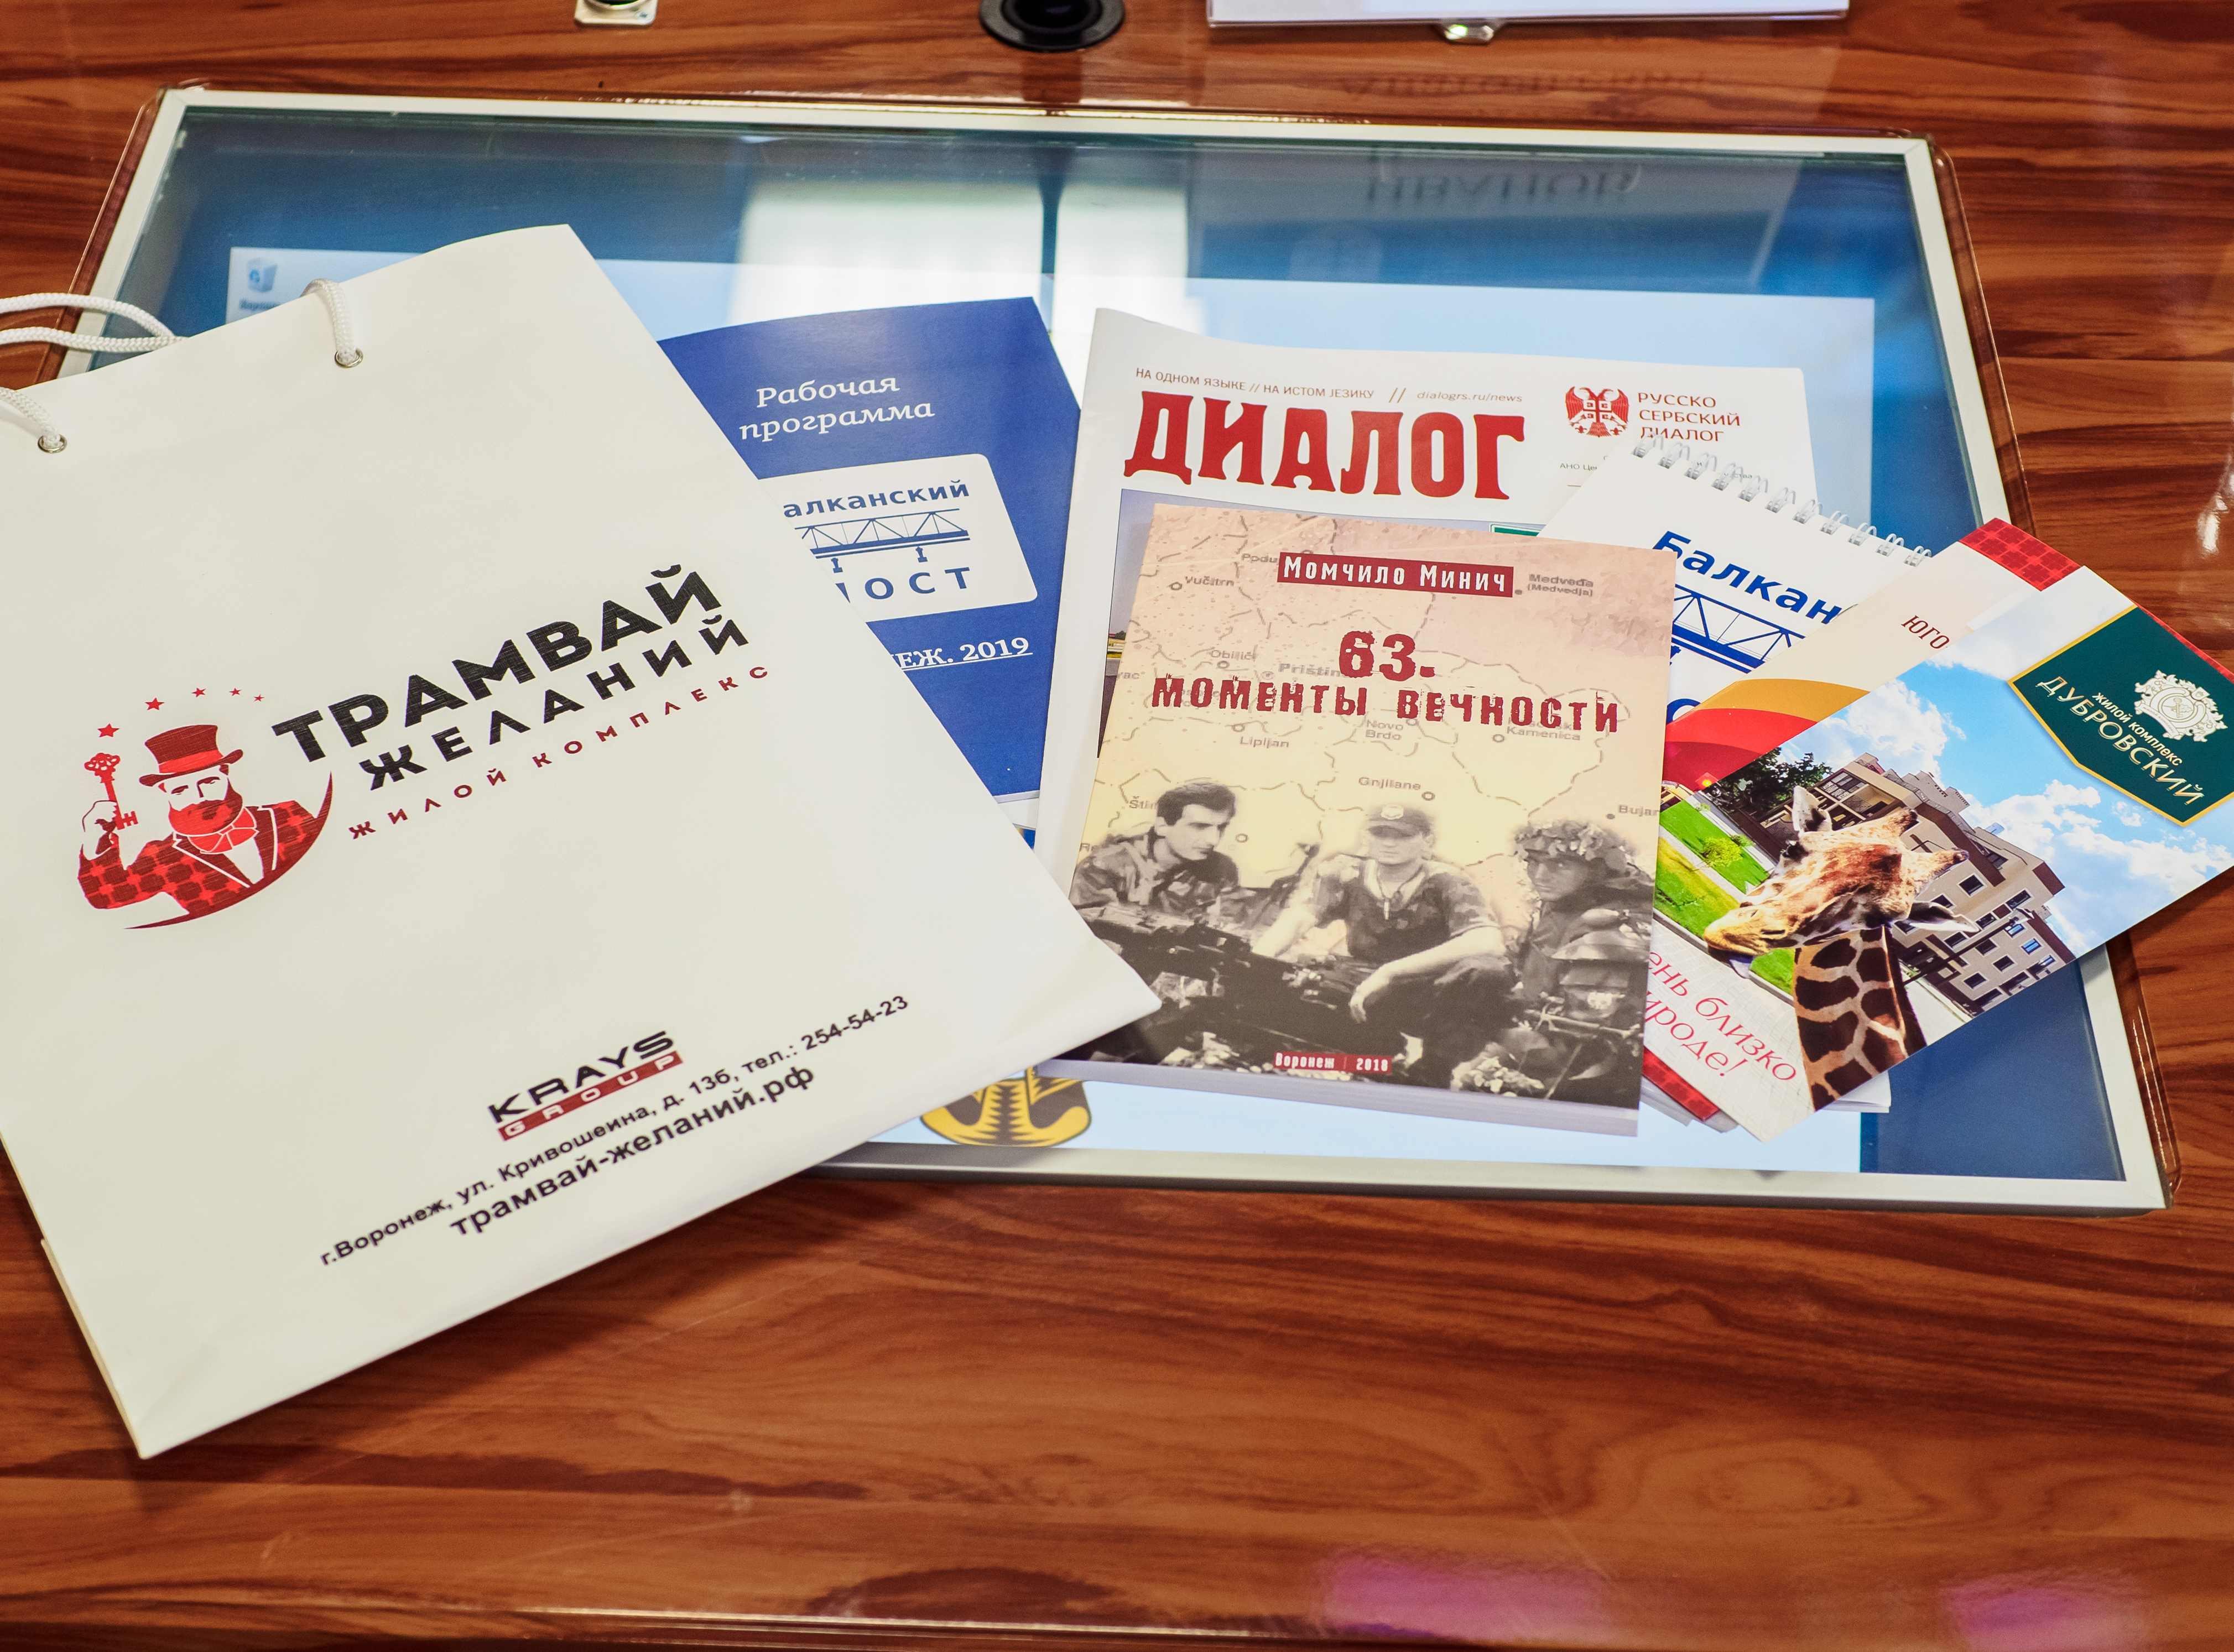 «Русско-Сербский Диалог» участвовал в организации круглого стола о межнациональных отношениях